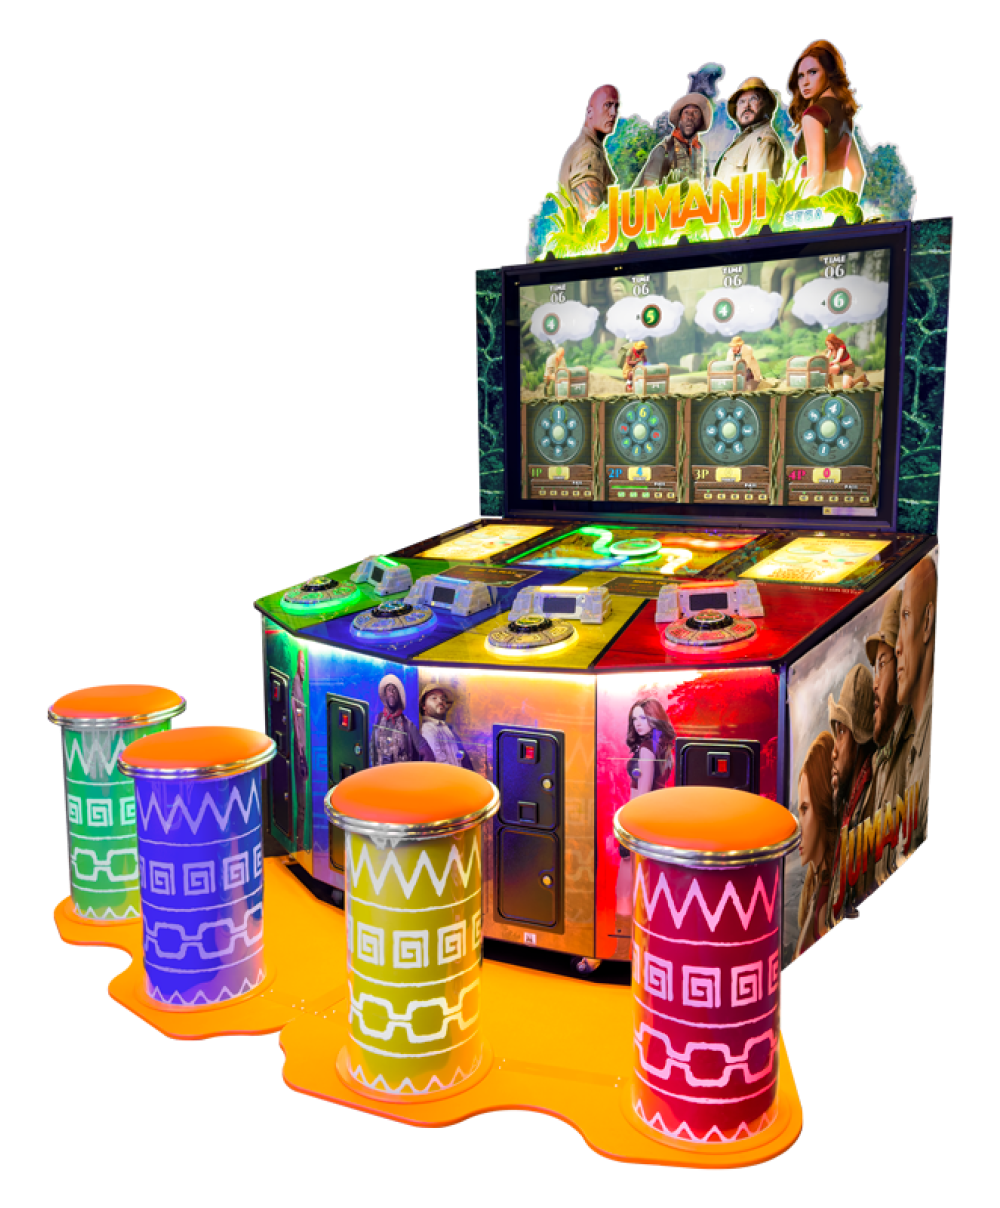 jumanji-video-redemption-arcade-game-for-sale-buy-now-sega